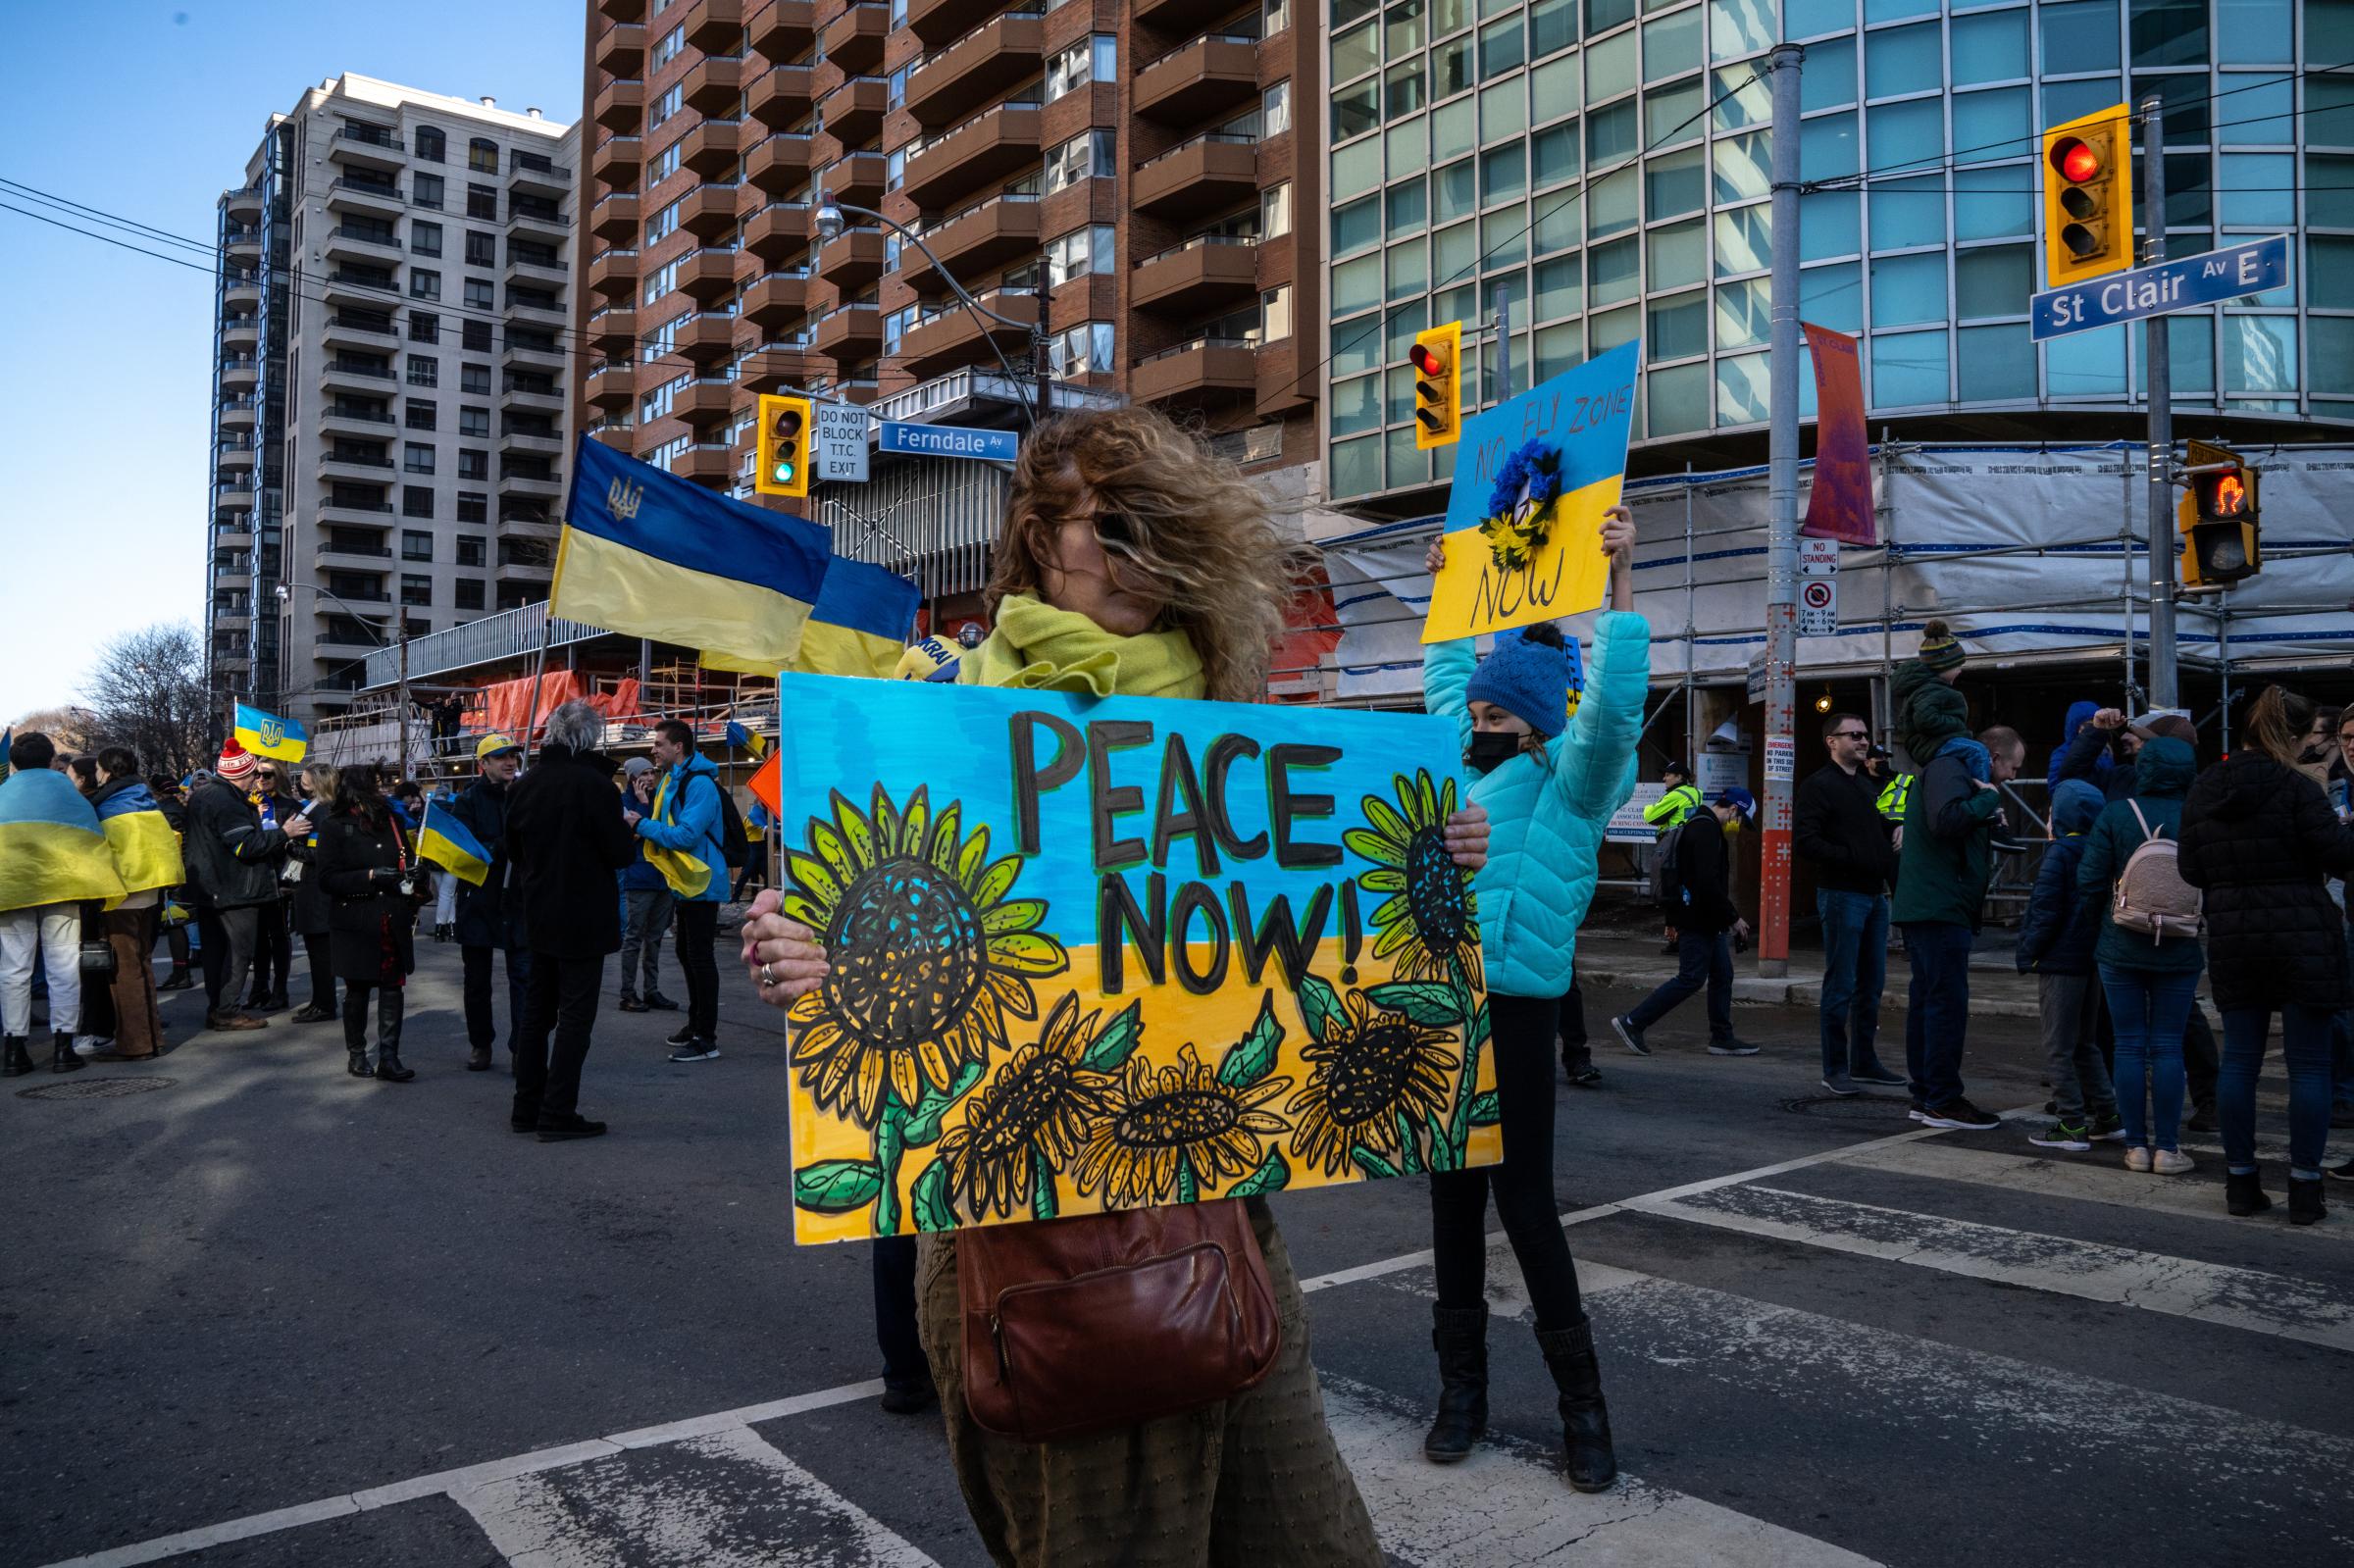 [Ongoing] Ukrainian Toronto Protests